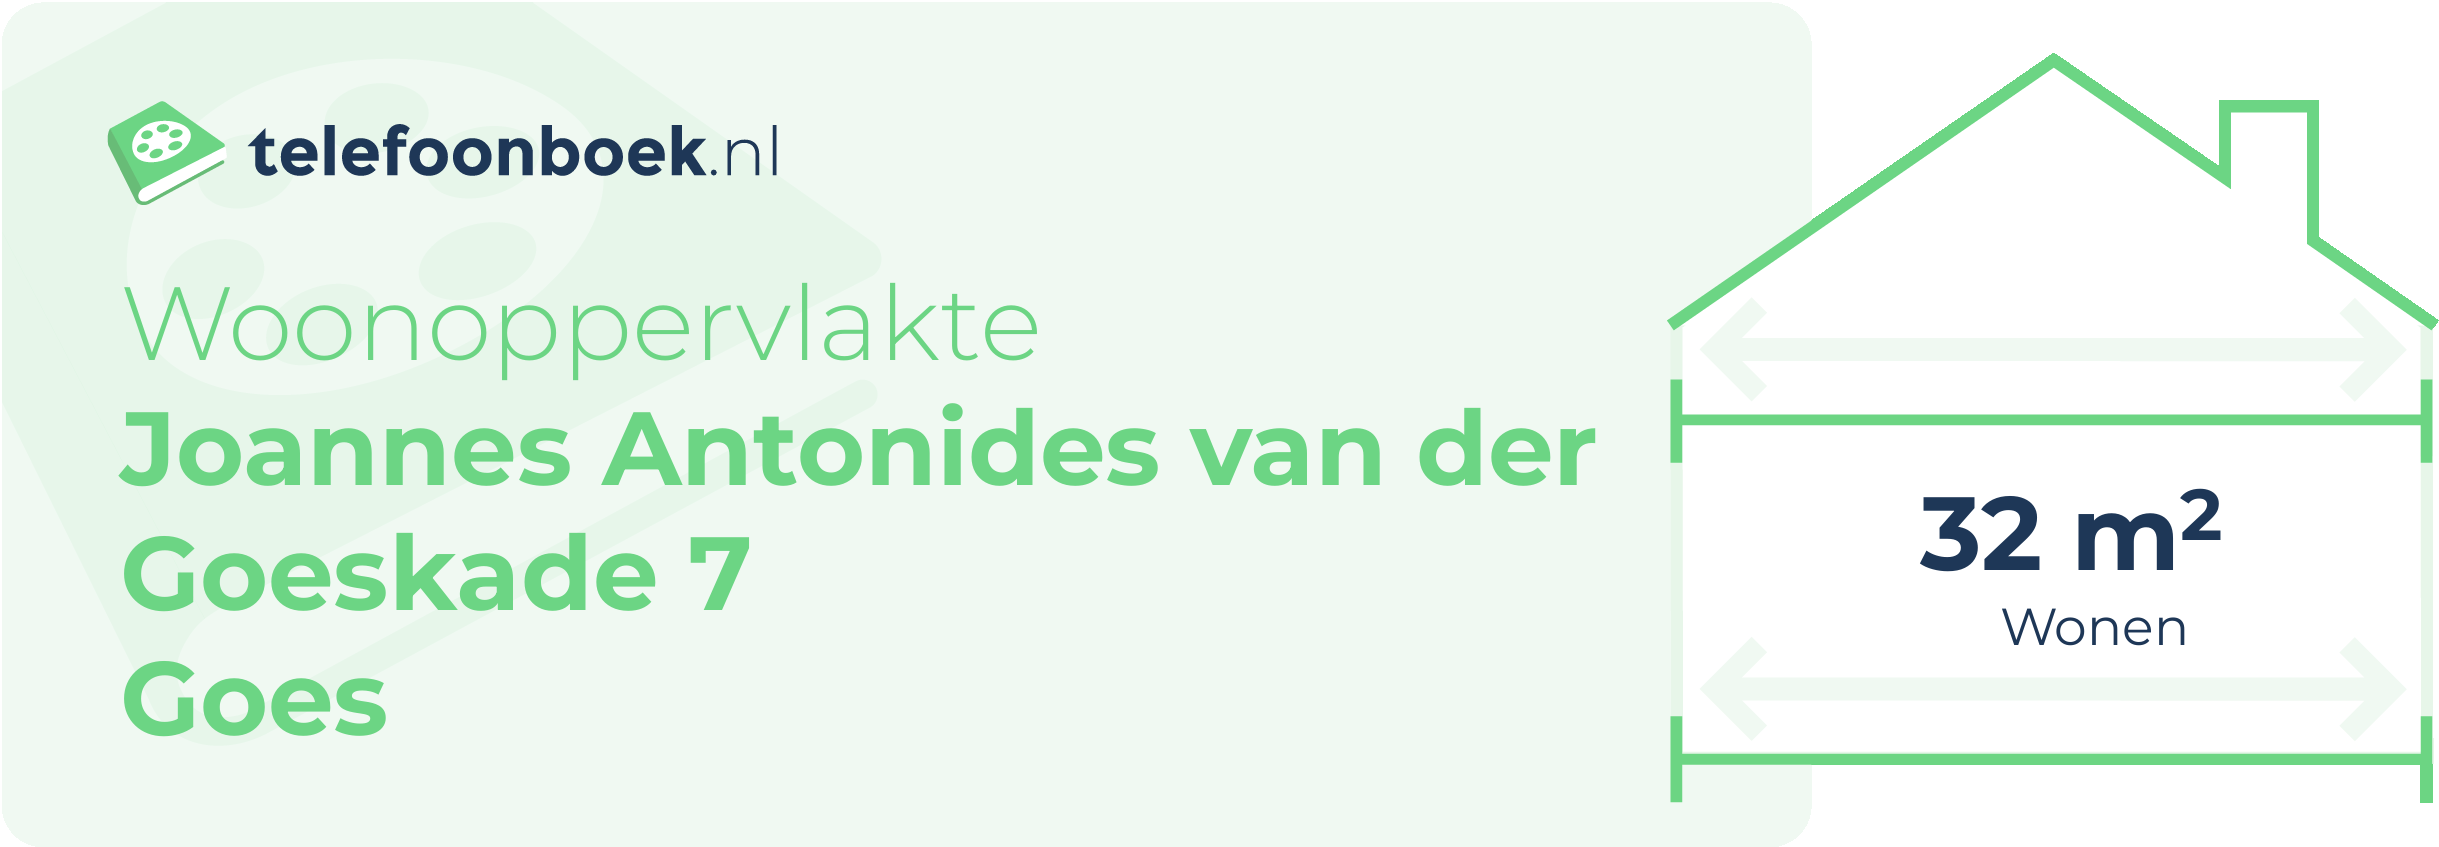 Woonoppervlakte Joannes Antonides Van Der Goeskade 7 Goes